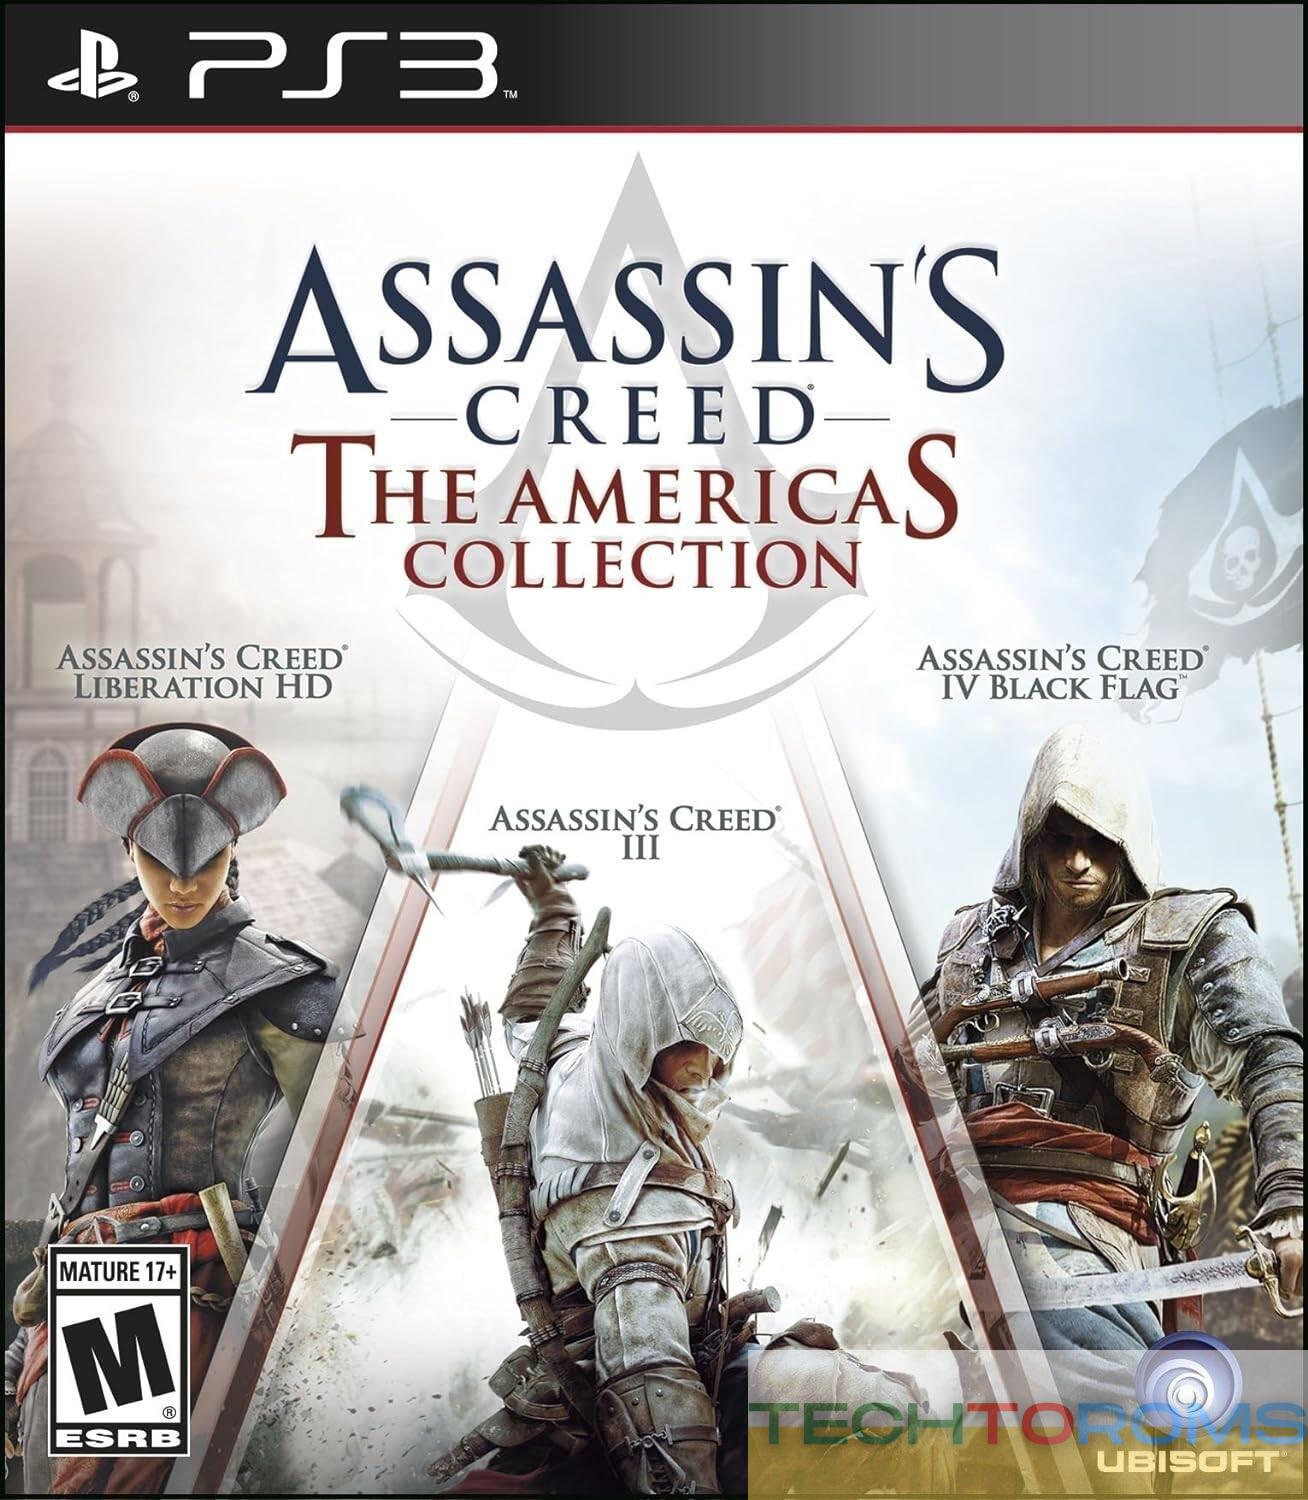 Assassin's Creed: a coleção das Américas